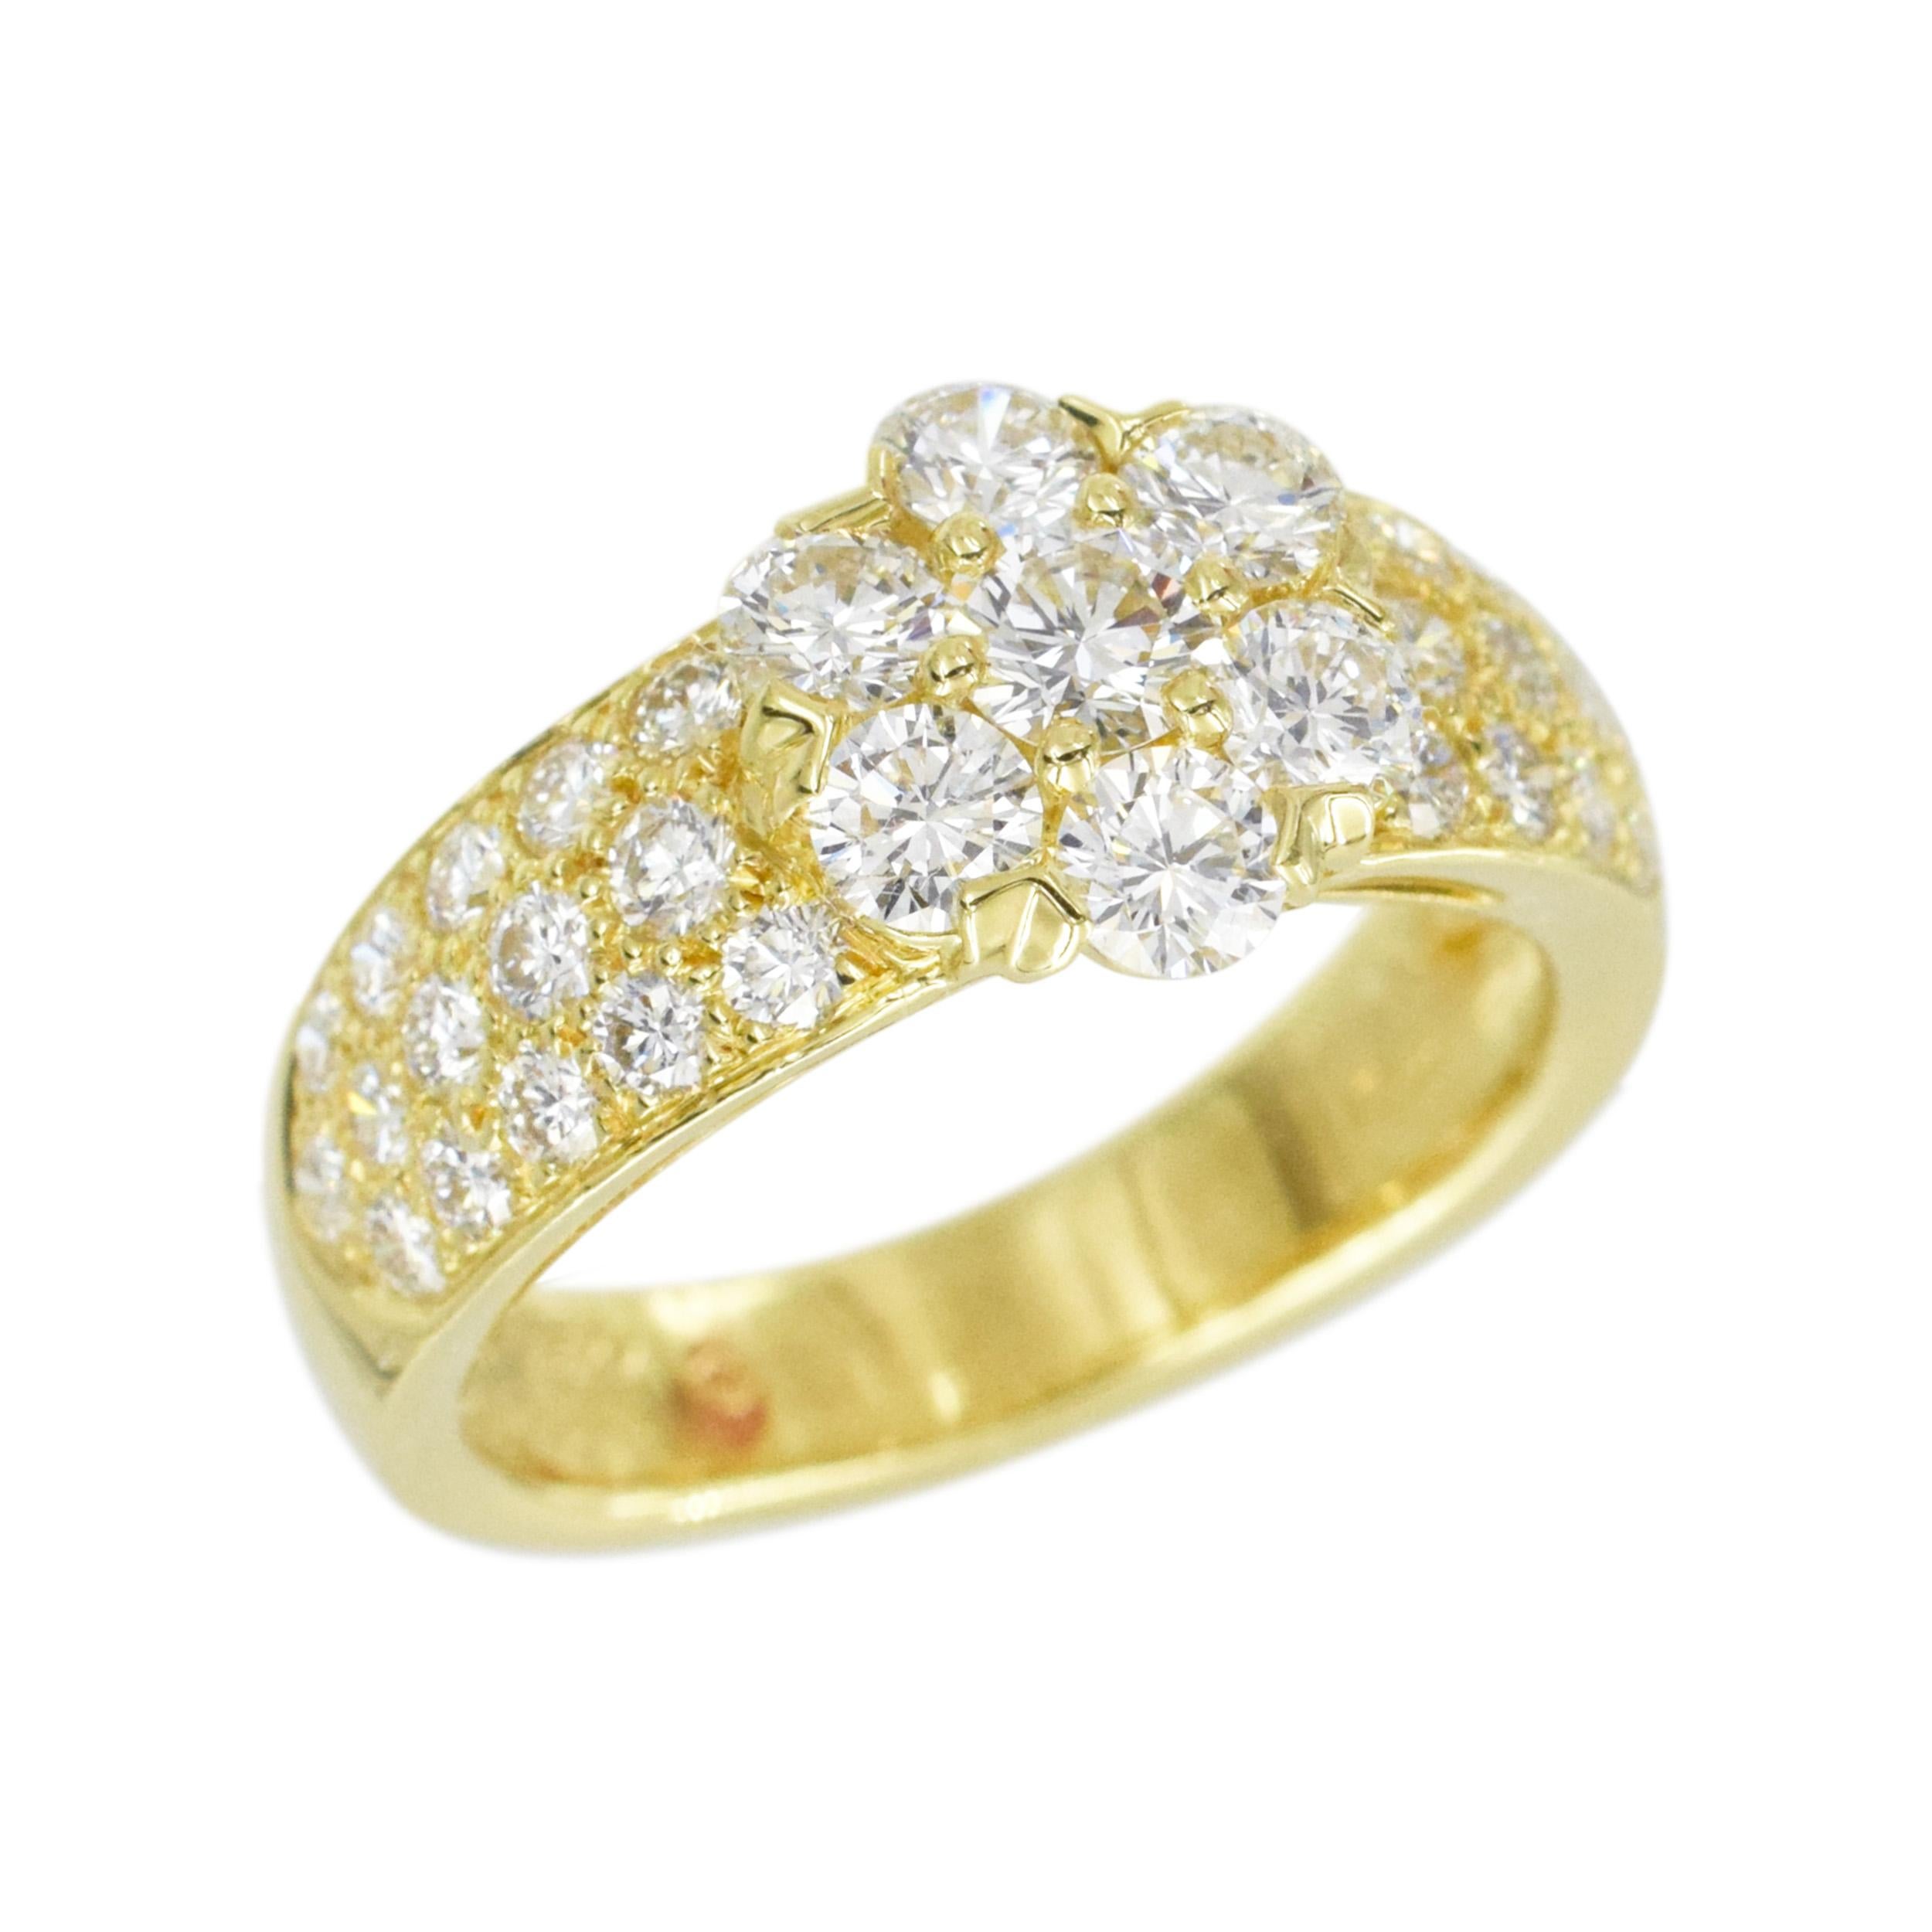 Bague fleurette en diamant Van Cleef & Arpels en or jaune 18k. L'anneau comporte un
La fleur au centre, composée de 7 diamants ronds de taille brillant, est accentuée par une tige à moitié pavée de 3 rangs de diamants ronds de taille brillant. Il y